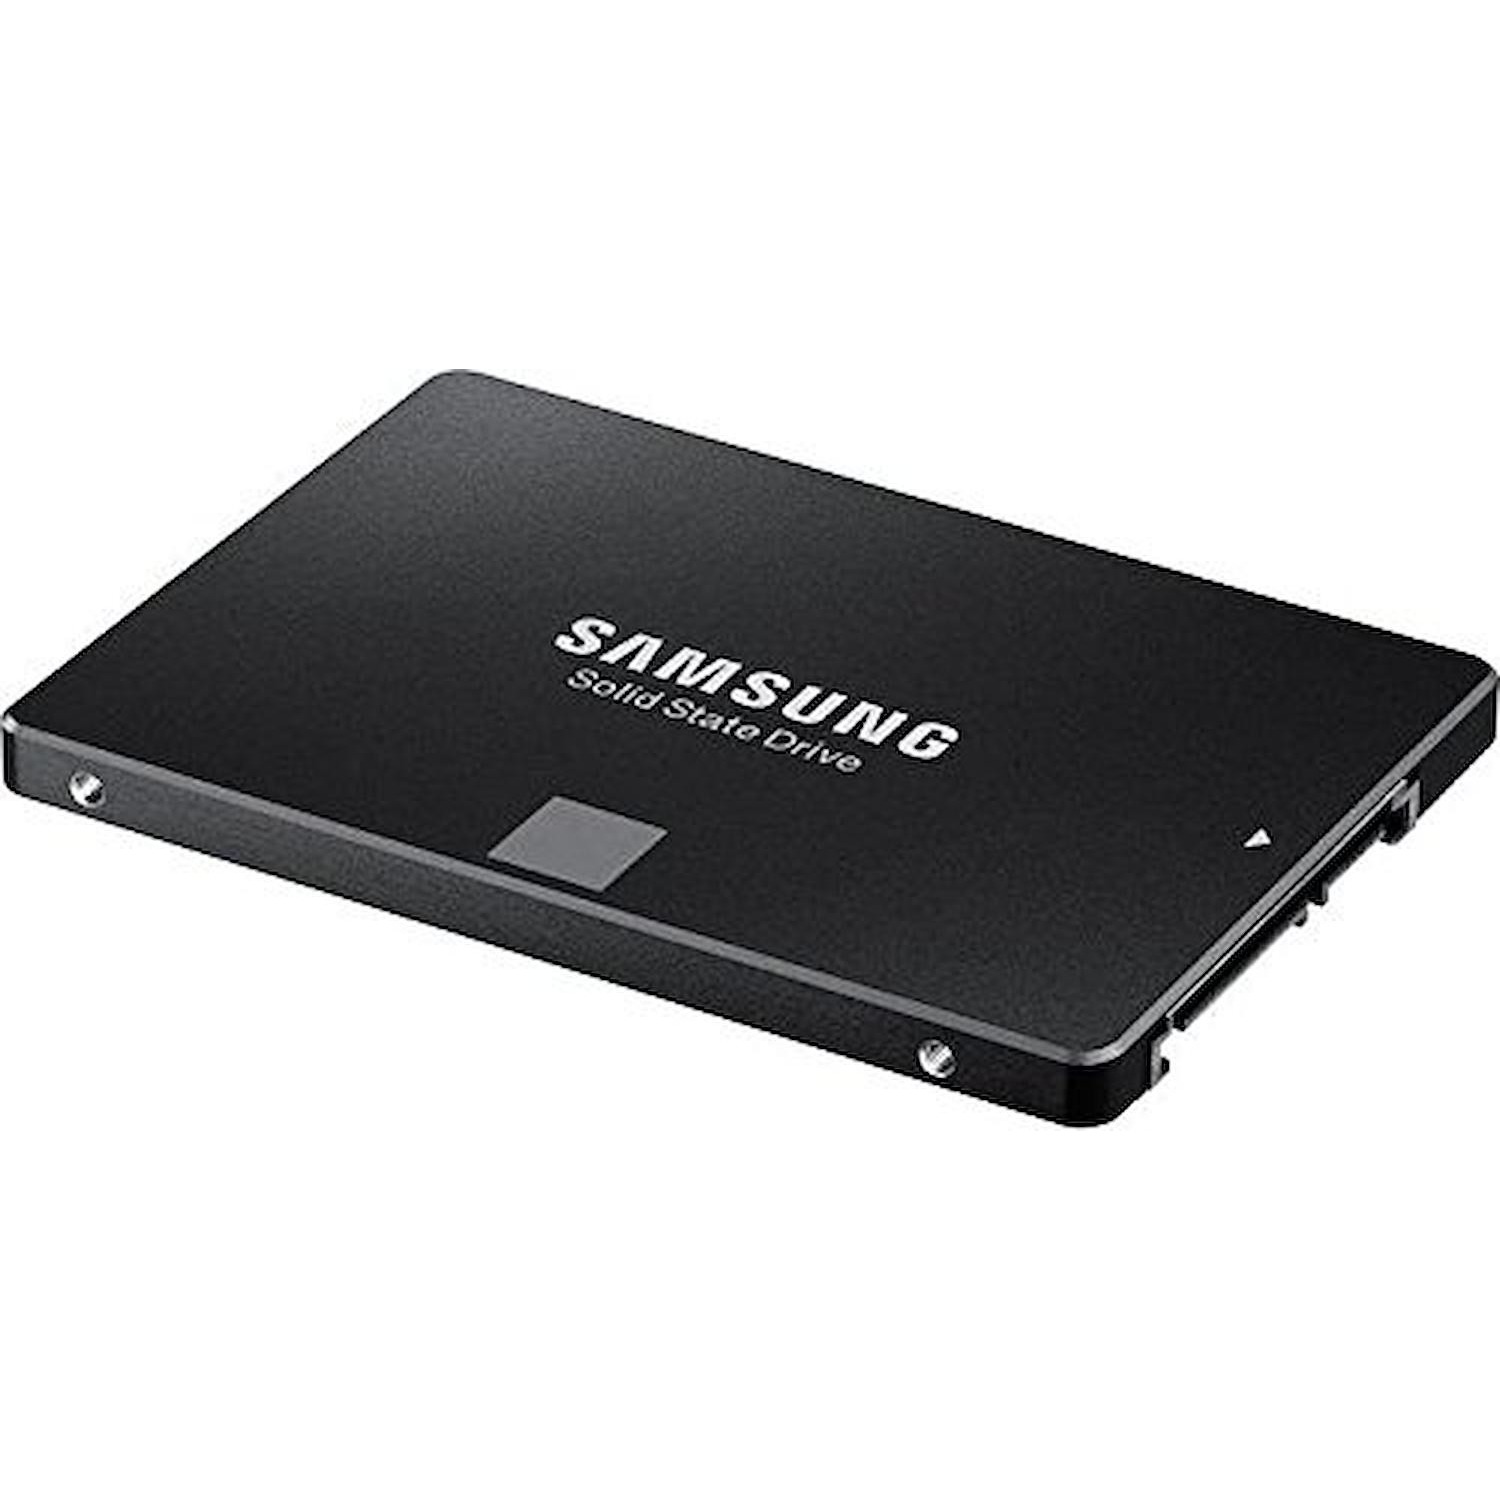 Immagine per HD SSD Samsung 500GB interno Sata3 da DIMOStore